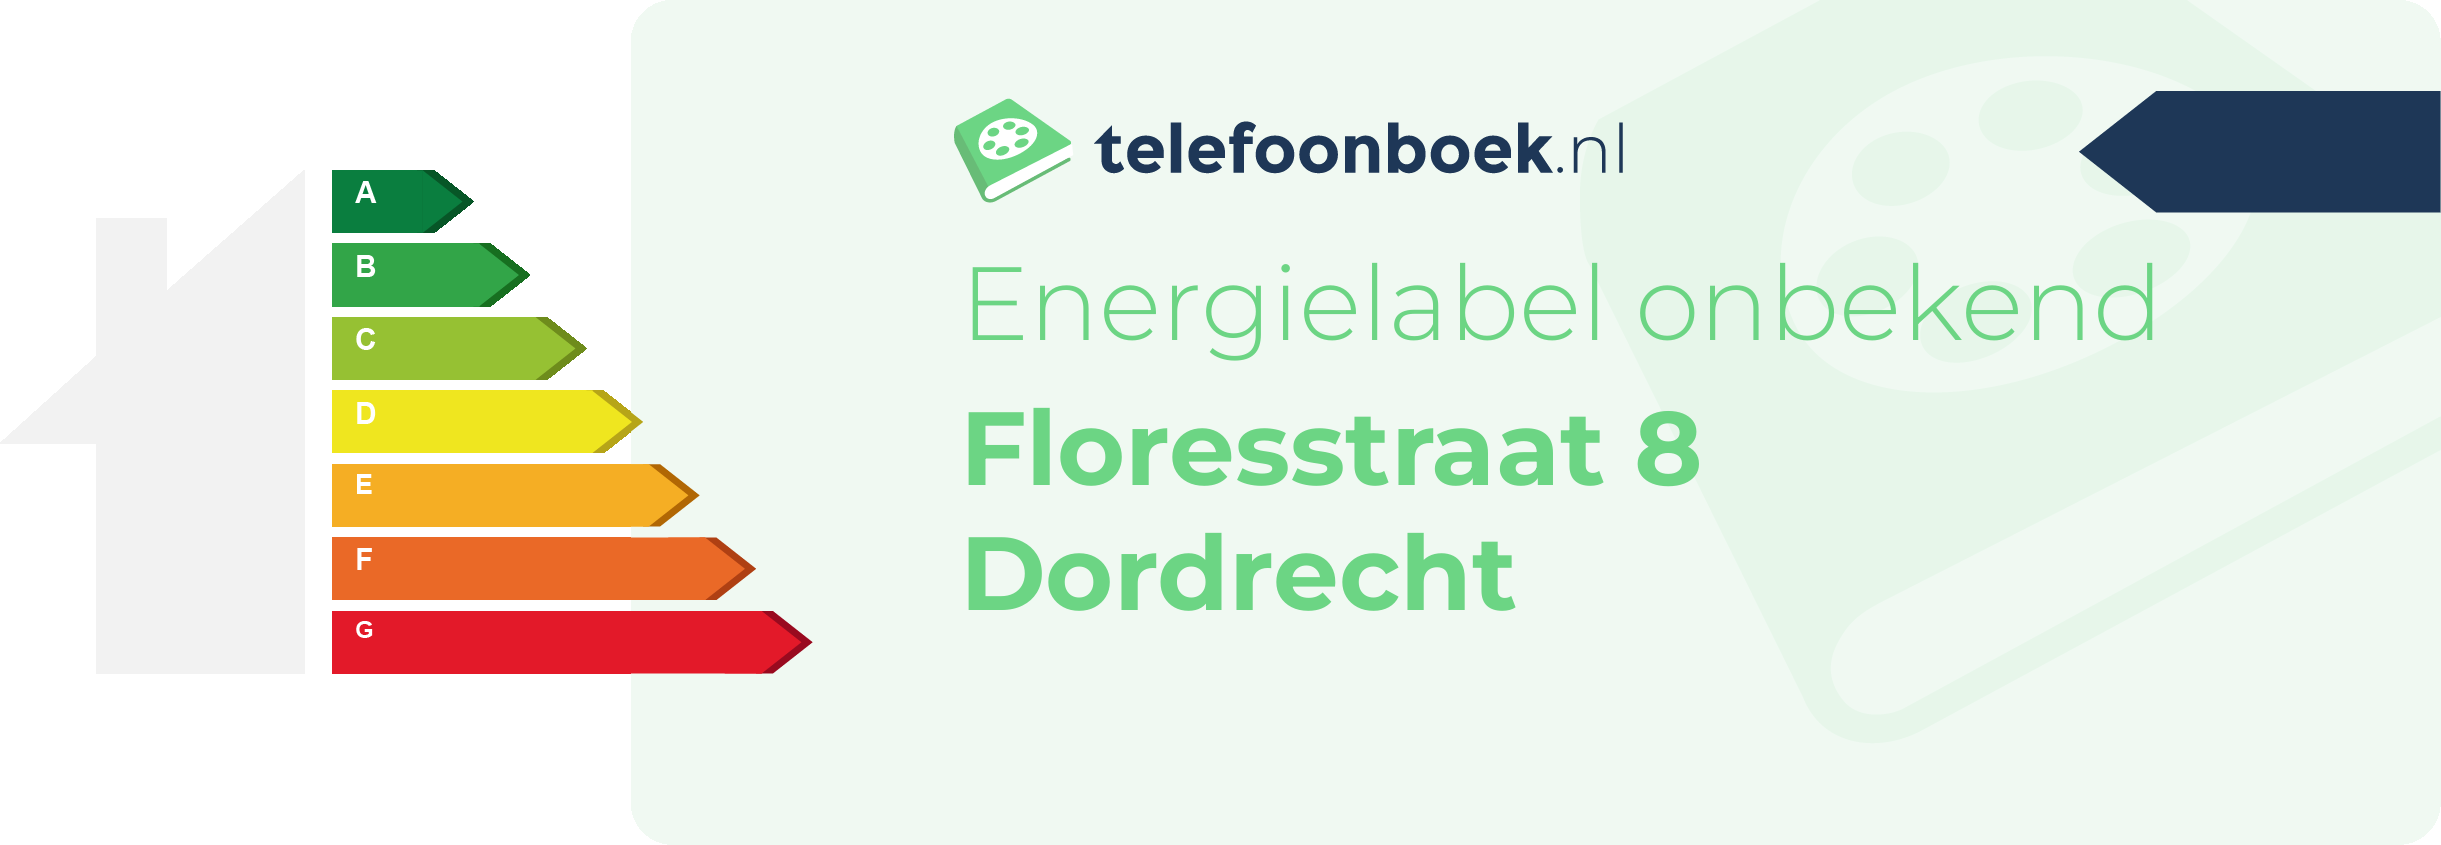 Energielabel Floresstraat 8 Dordrecht